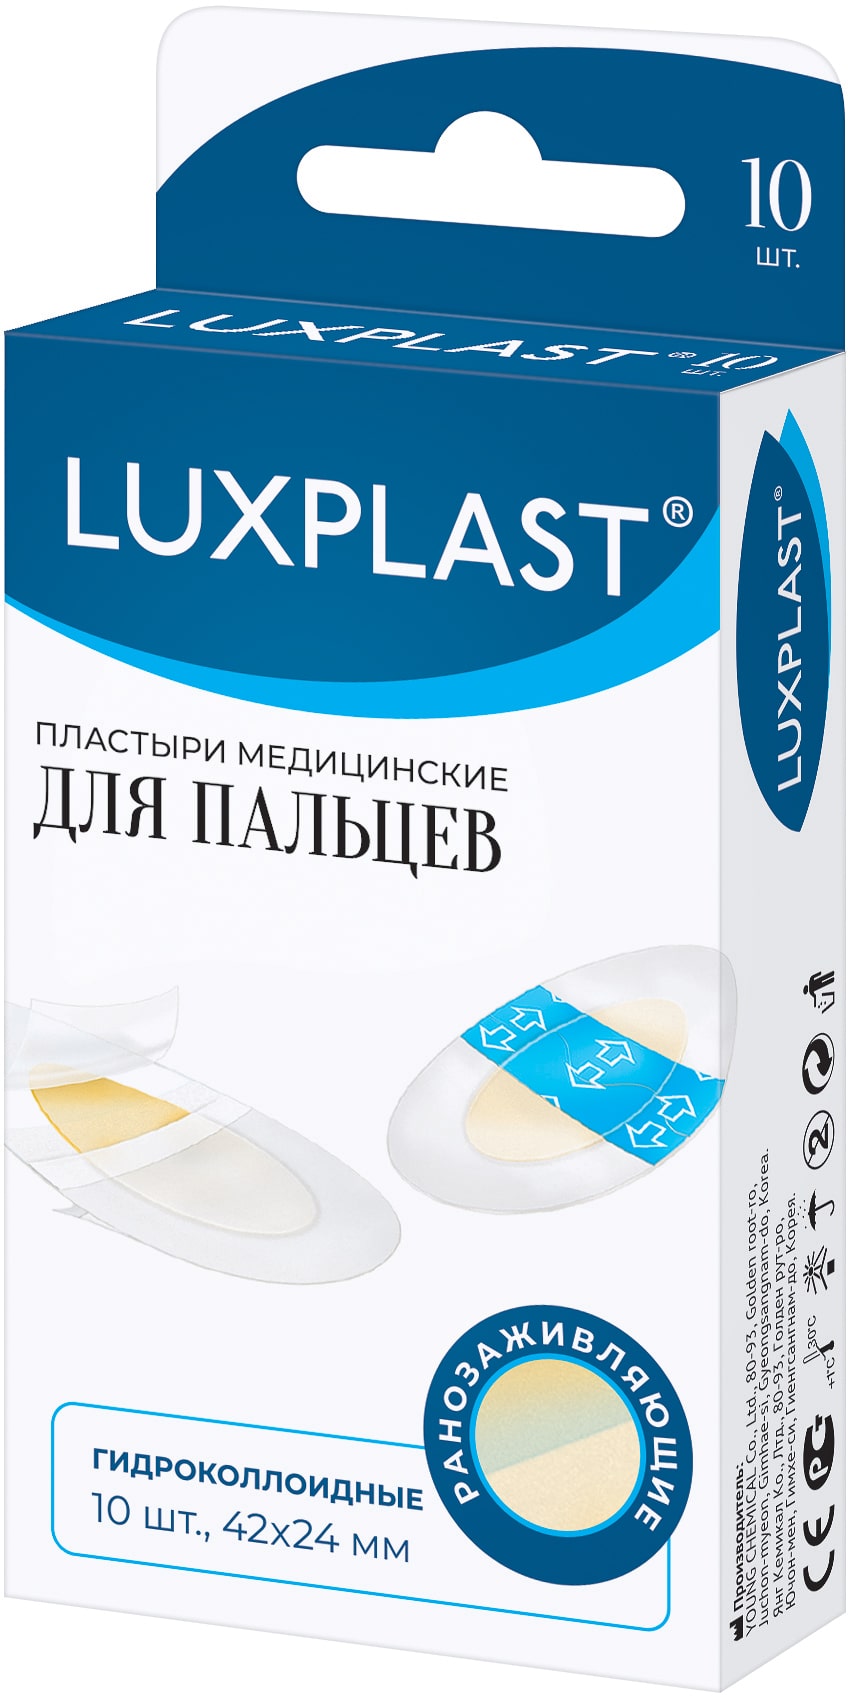 Luxplast Пластыри медицинские гидроколлоидные для пальцев 42